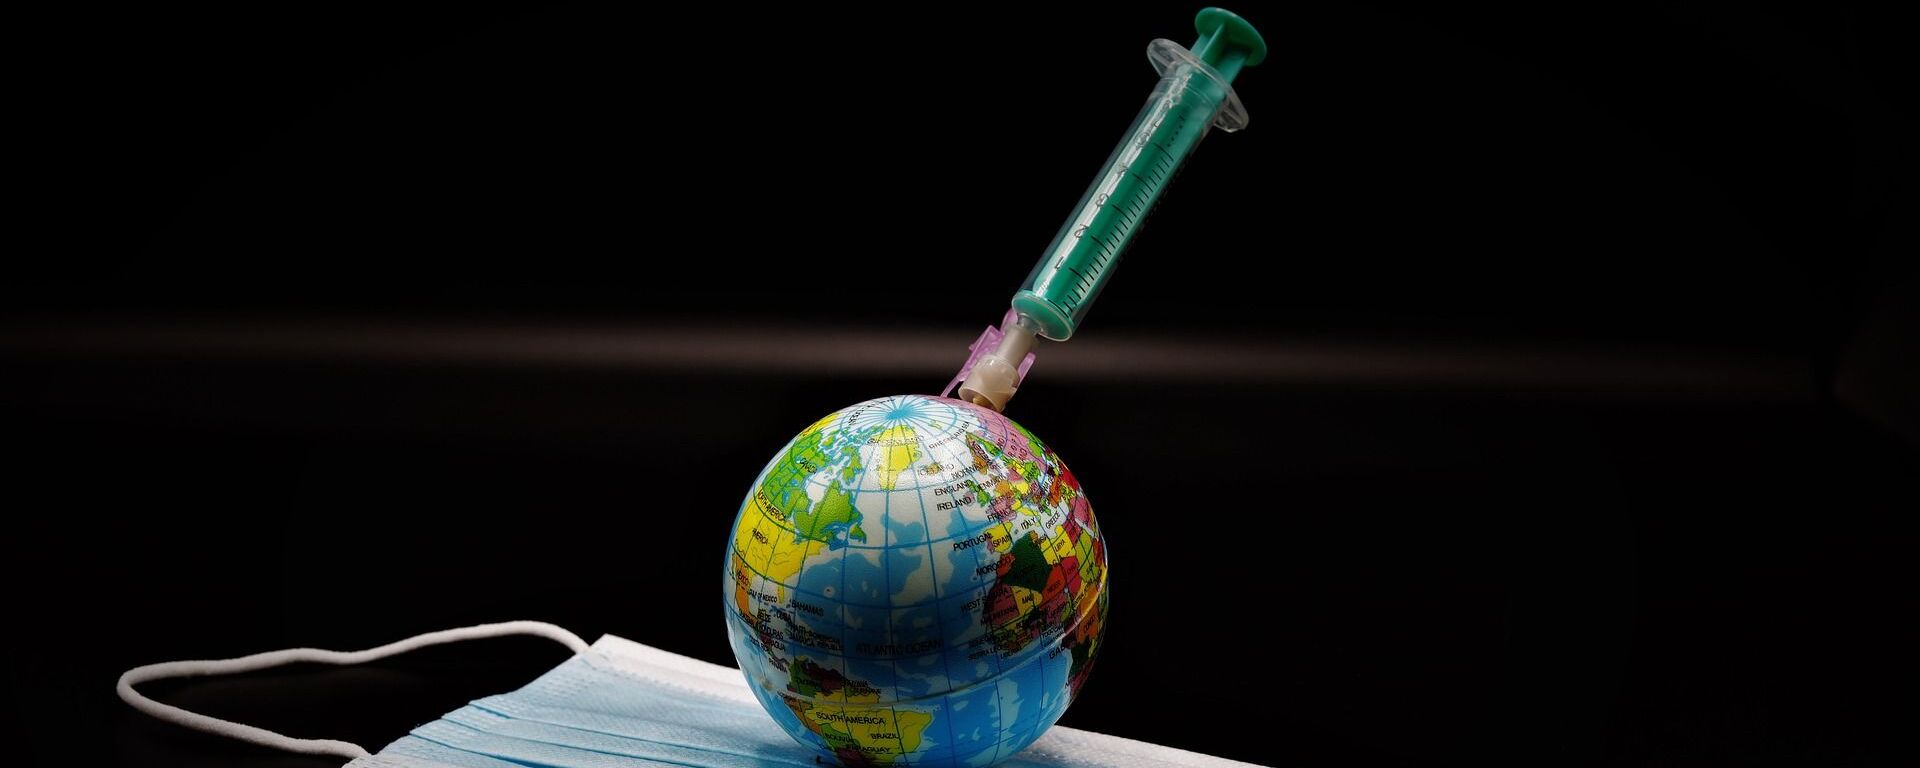 Un globo, una vacuna y una mascarilla durante el brote de coronavirus en el mundo - Sputnik Mundo, 1920, 10.03.2021